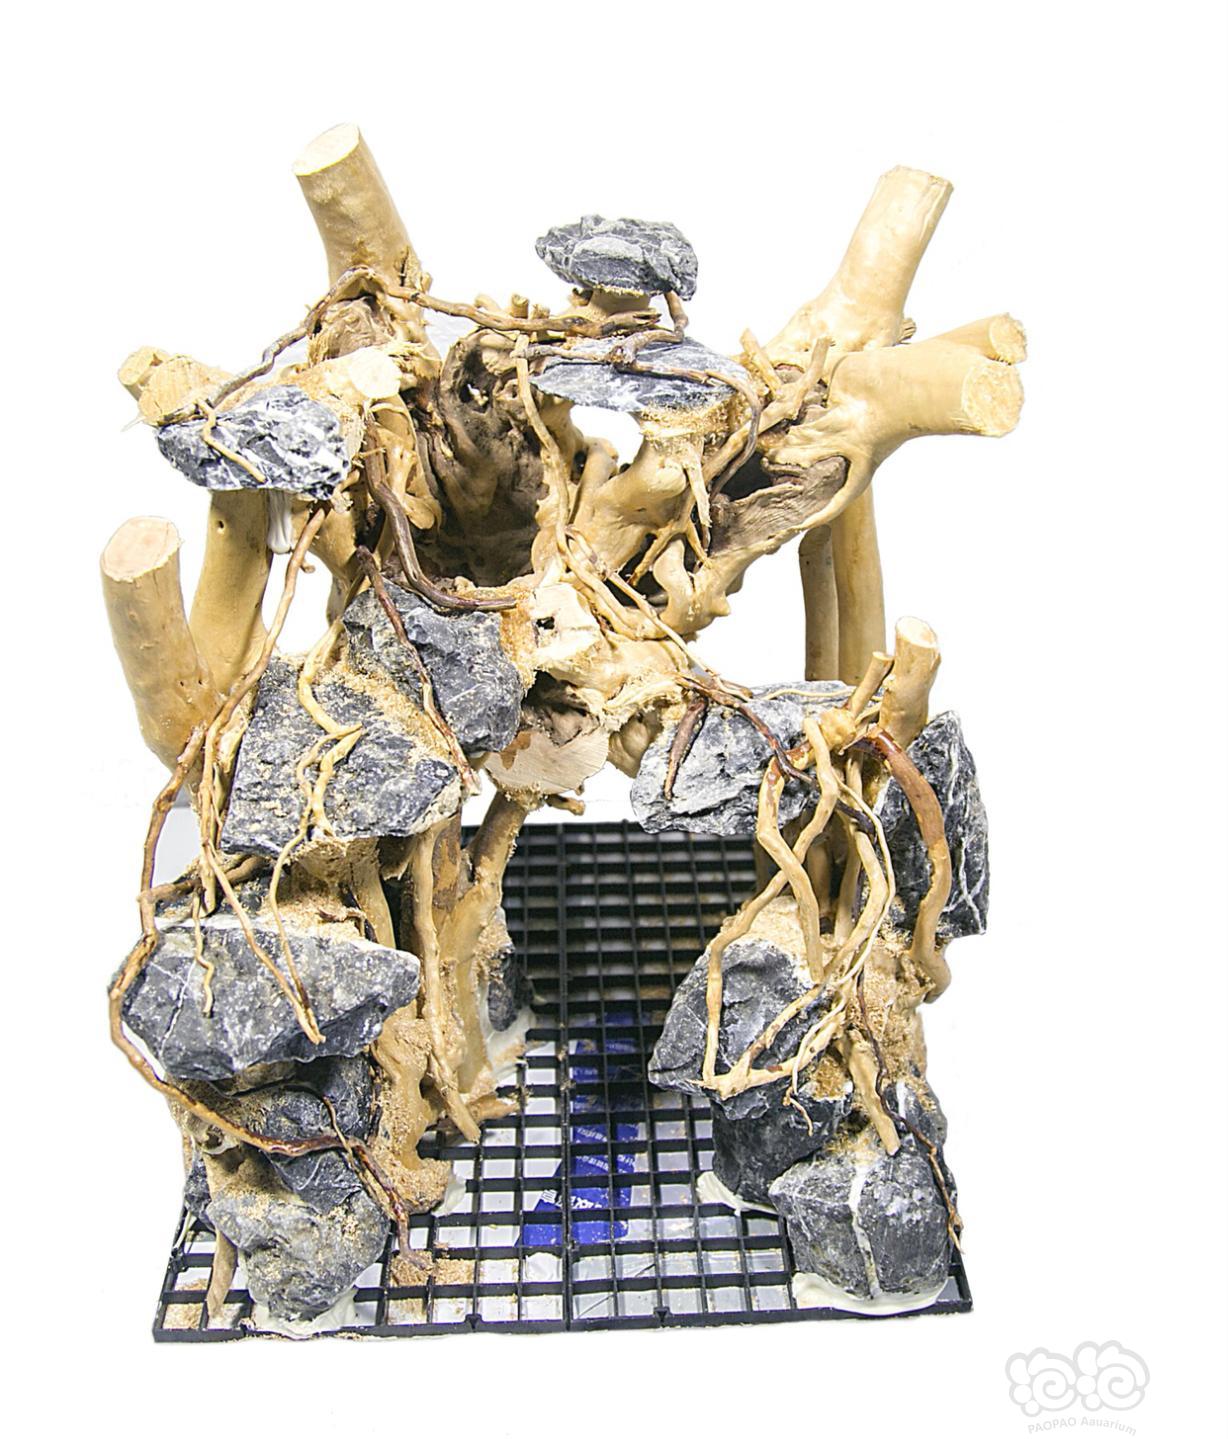 【出售】现货鱼缸草缸杜鹃根珊瑚沉木青龙石整体骨架造景定做-图3